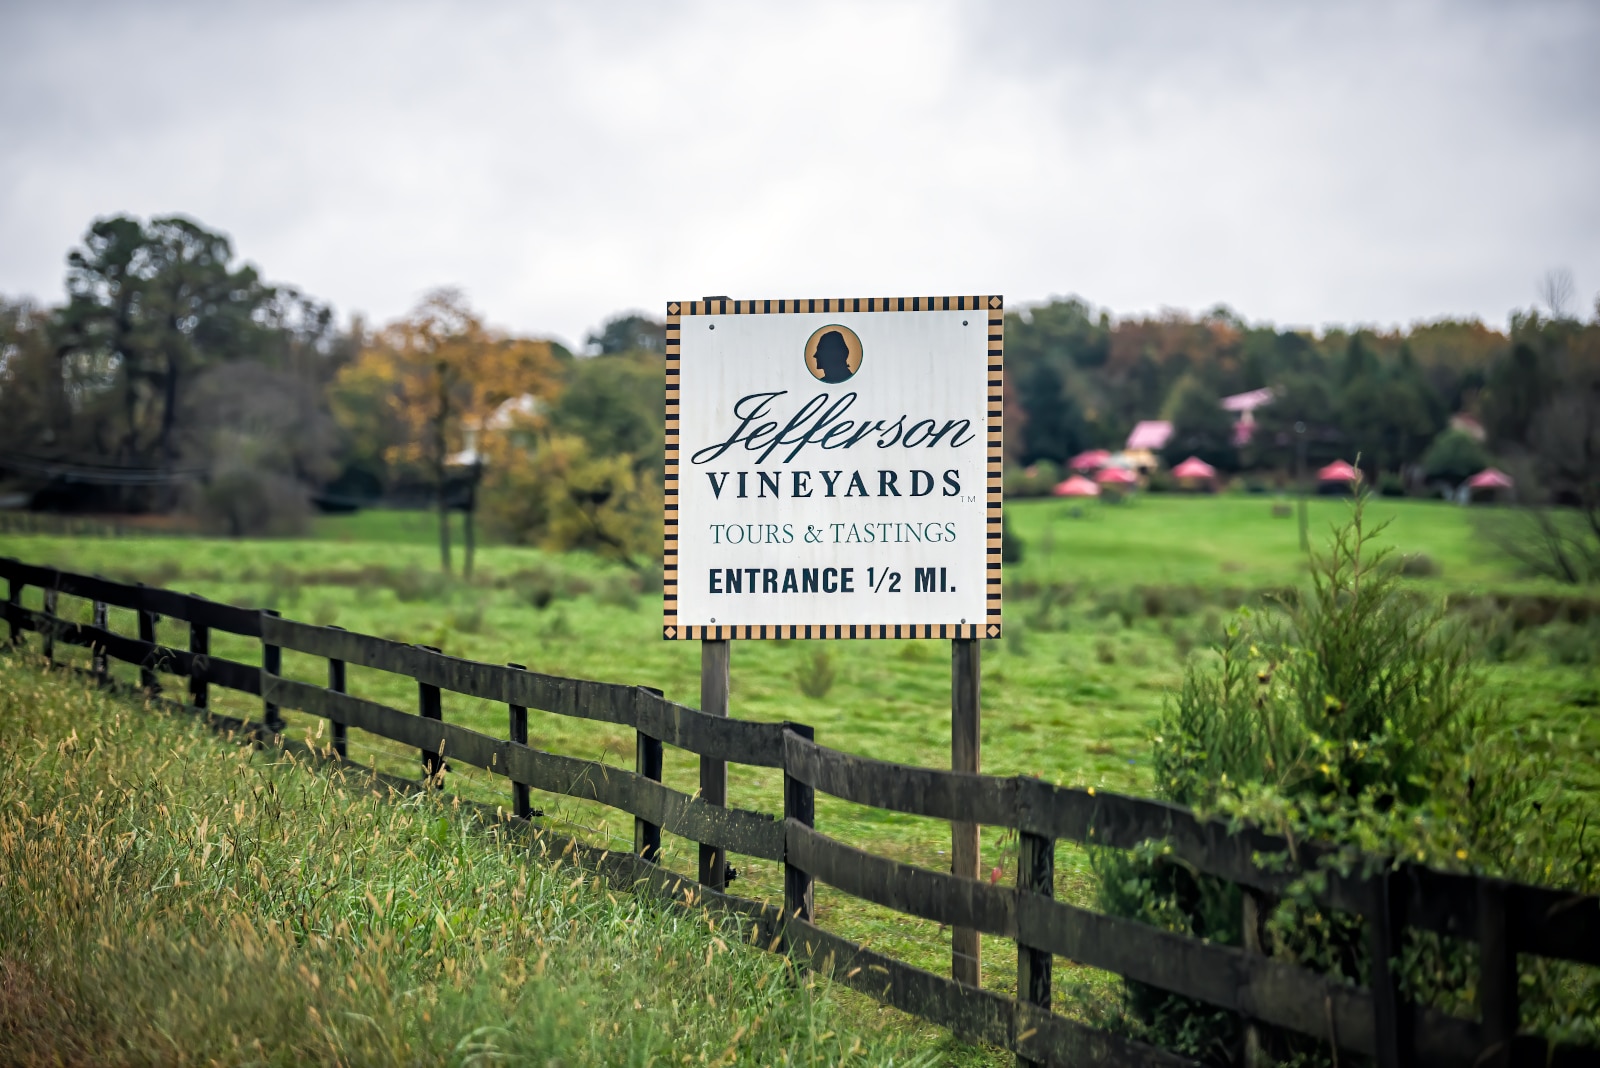 Jefferson Vineyards, Charlottesville, Virginia